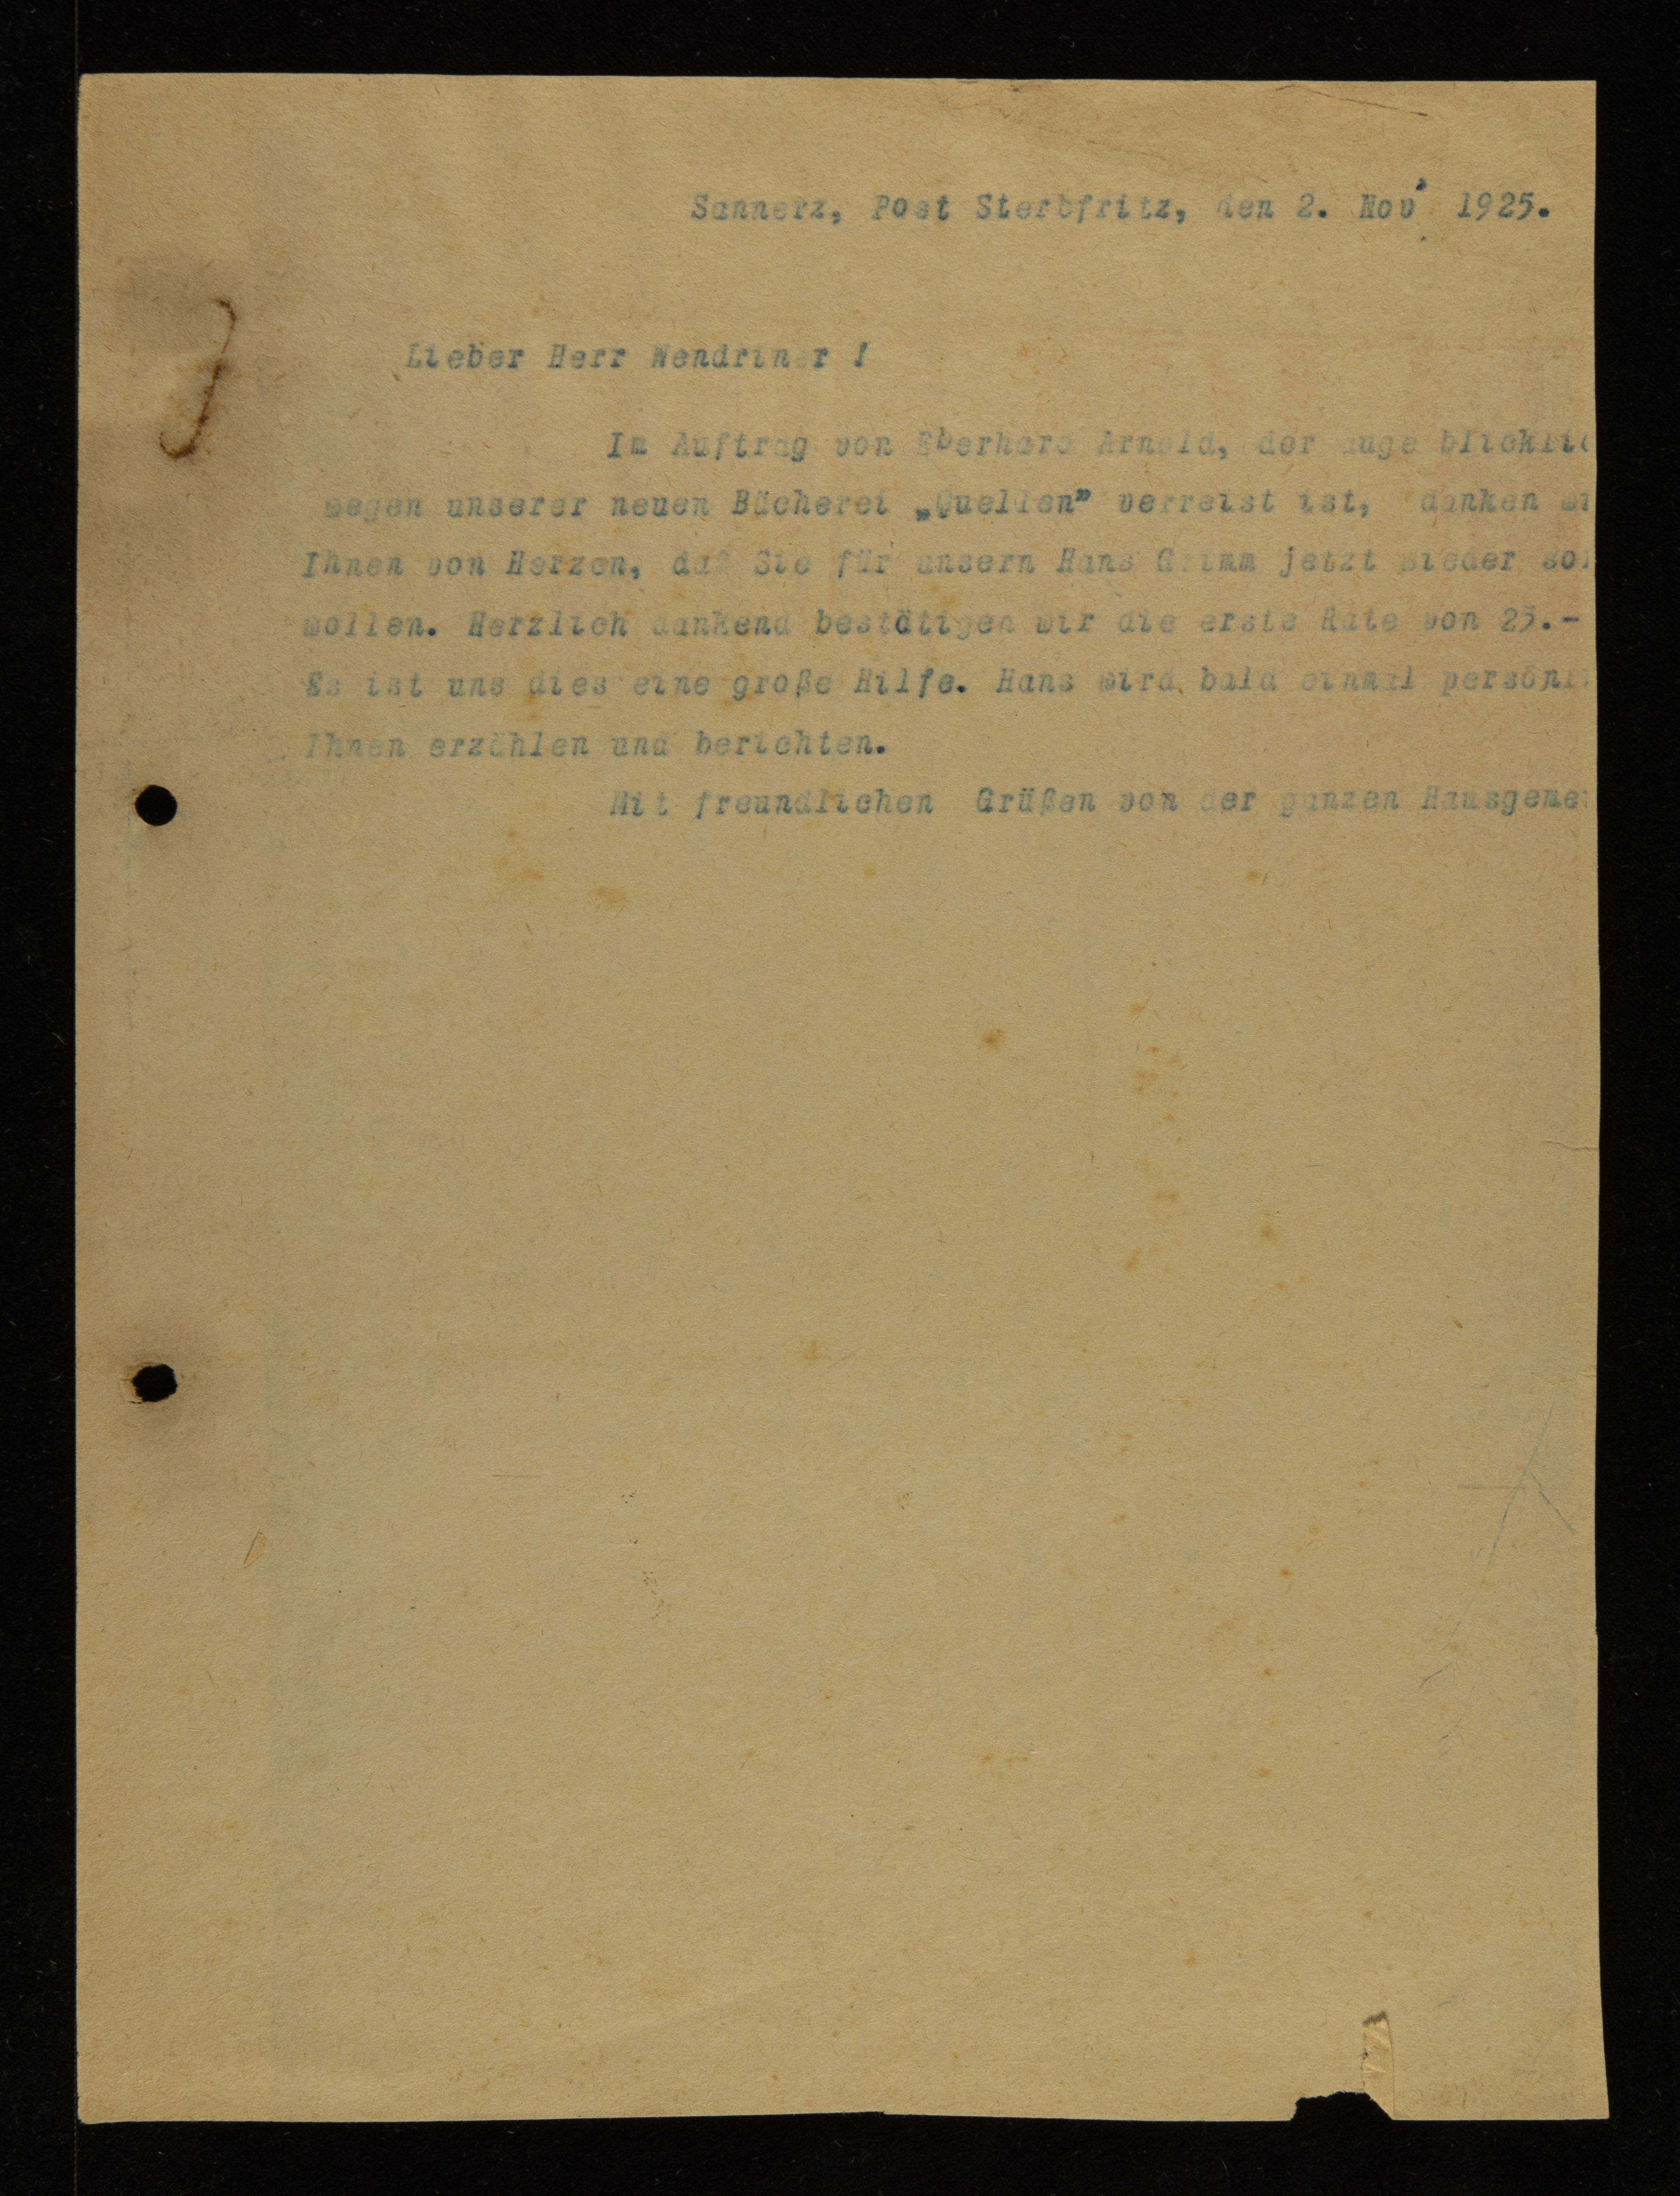 Correspondence, November - December 1925